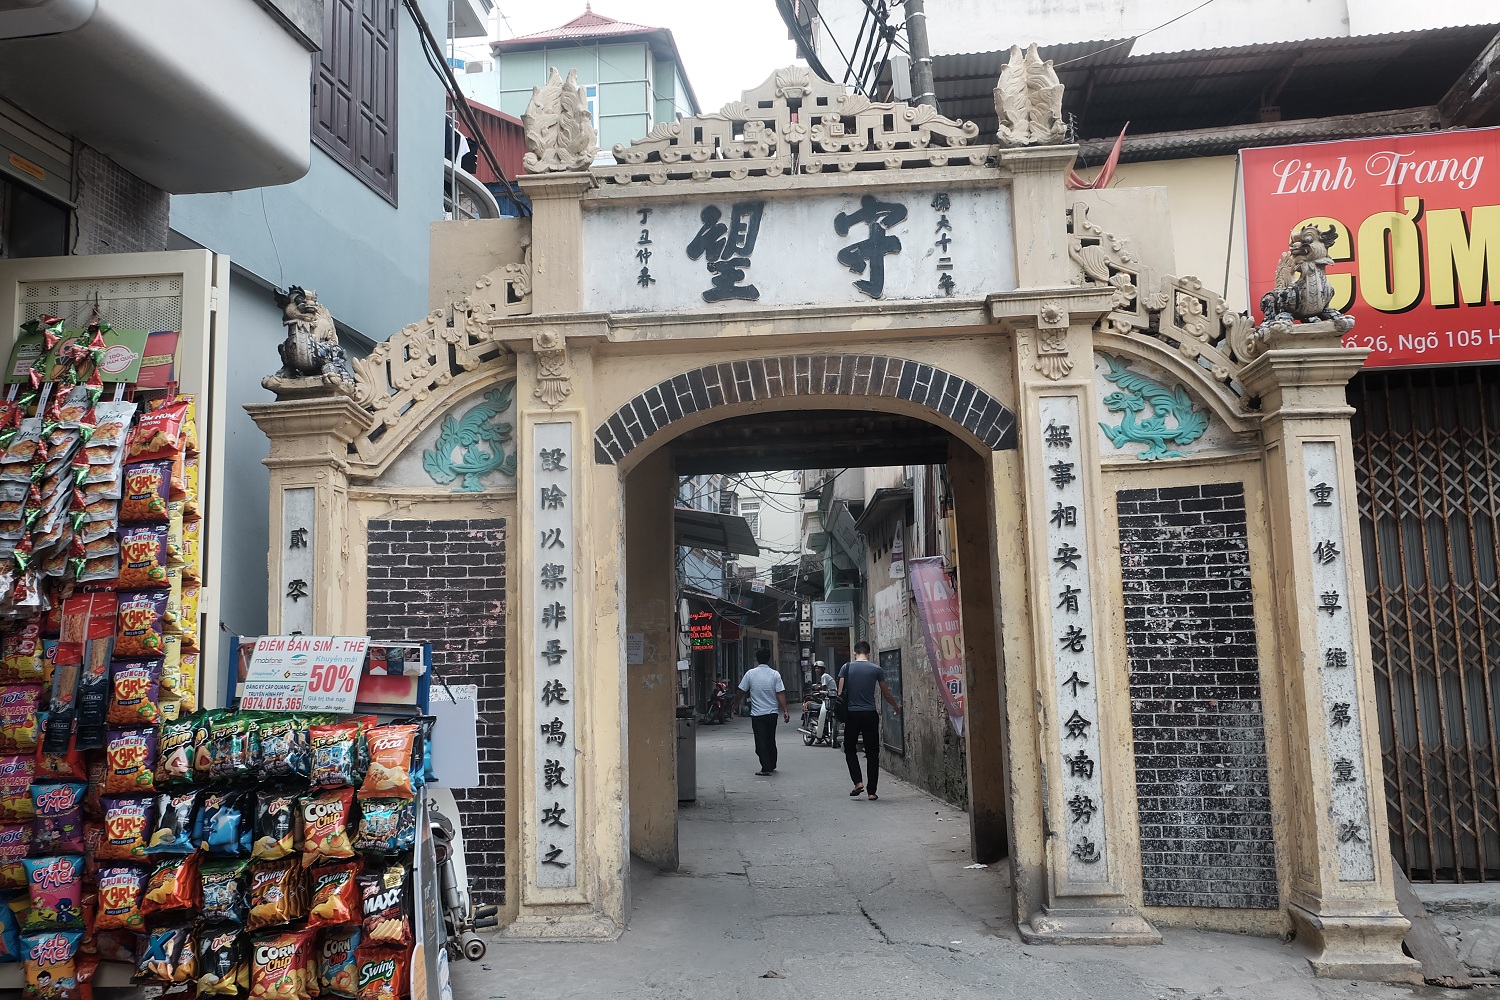 Cổng làng Sở ở ngõ 105 Hồ Tùng Mậu đươc xây dựng vào năm 1938. Cổng làng thuộc loại cổng làng cổ phổ biến thời xa xưa, loại cổng một lối đi và có thêm “cổng mã” ở hai bên.